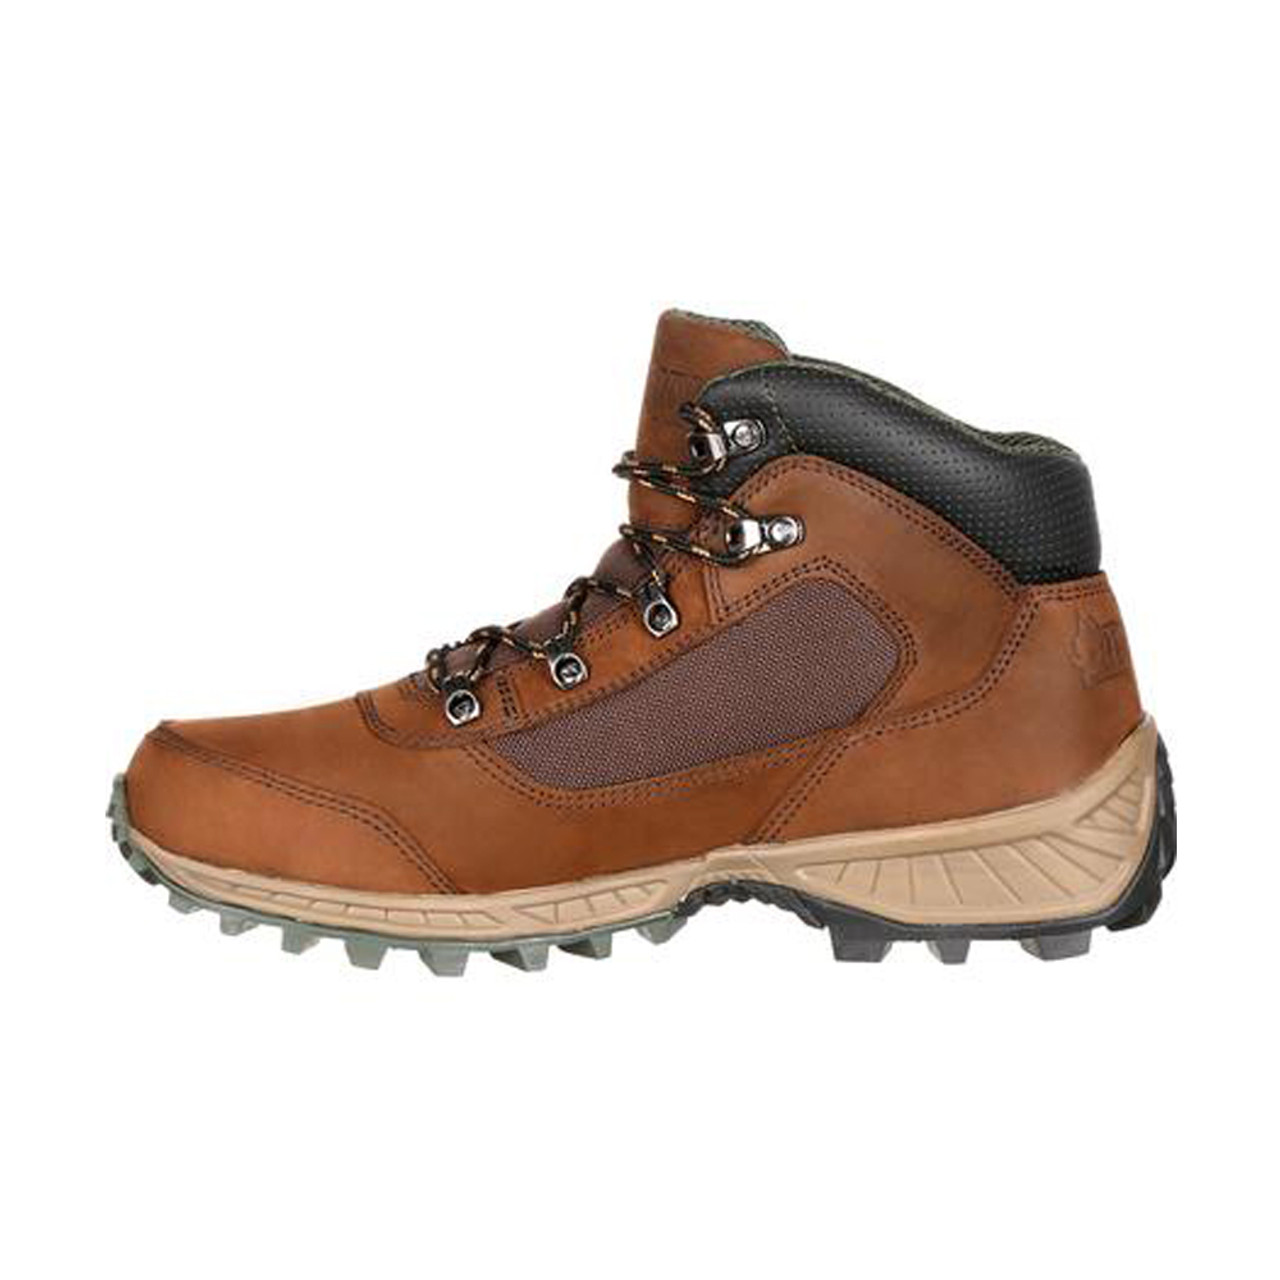 rocky waterproof outdoor hiking boot